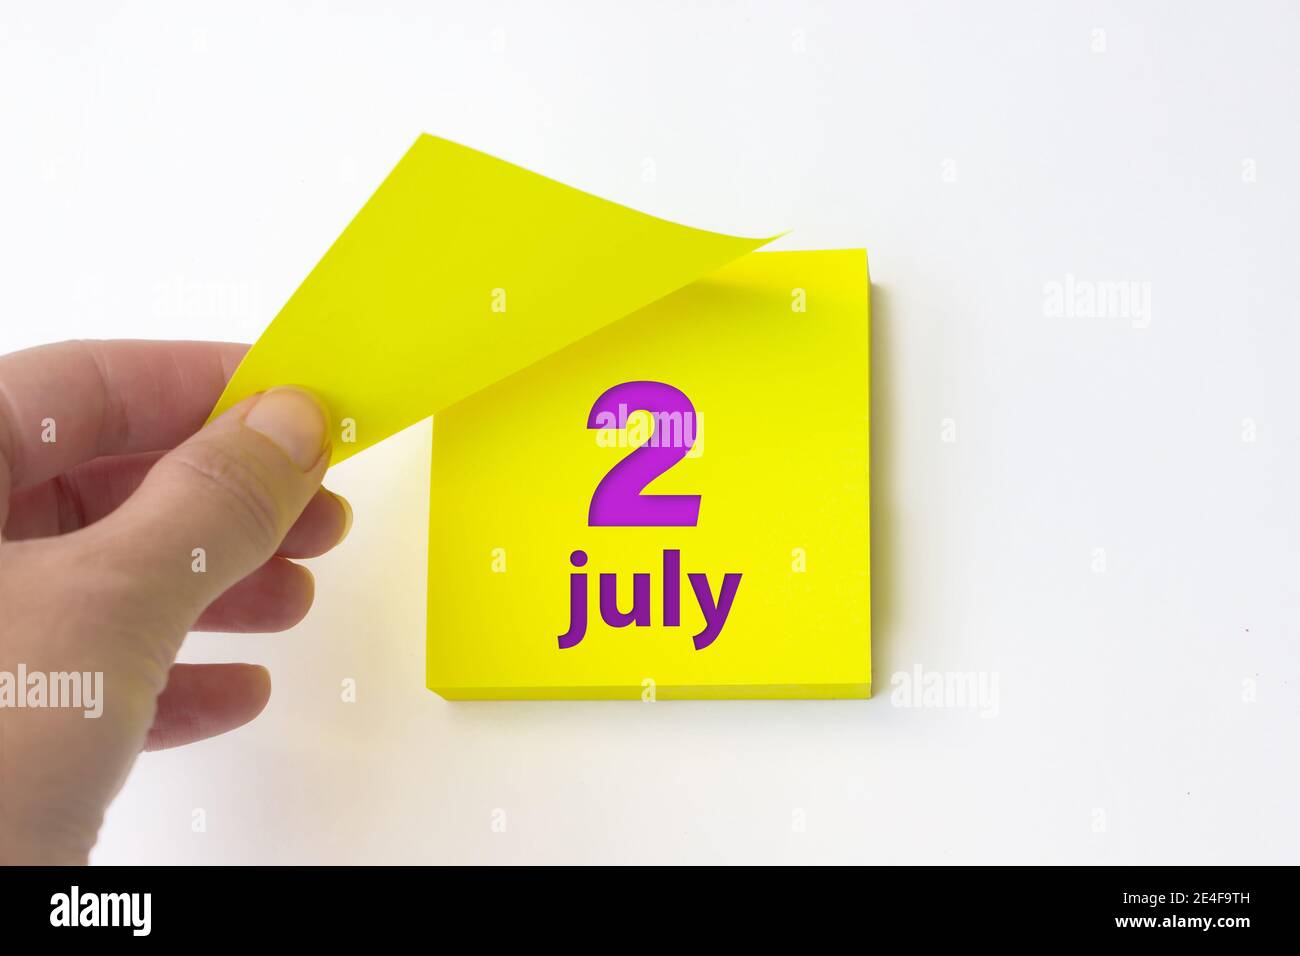 2 juillet. Jour 2 du mois, date du calendrier. La main se défait de la feuille jaune du calendrier. Concept mois d'été, jour de l'année Banque D'Images